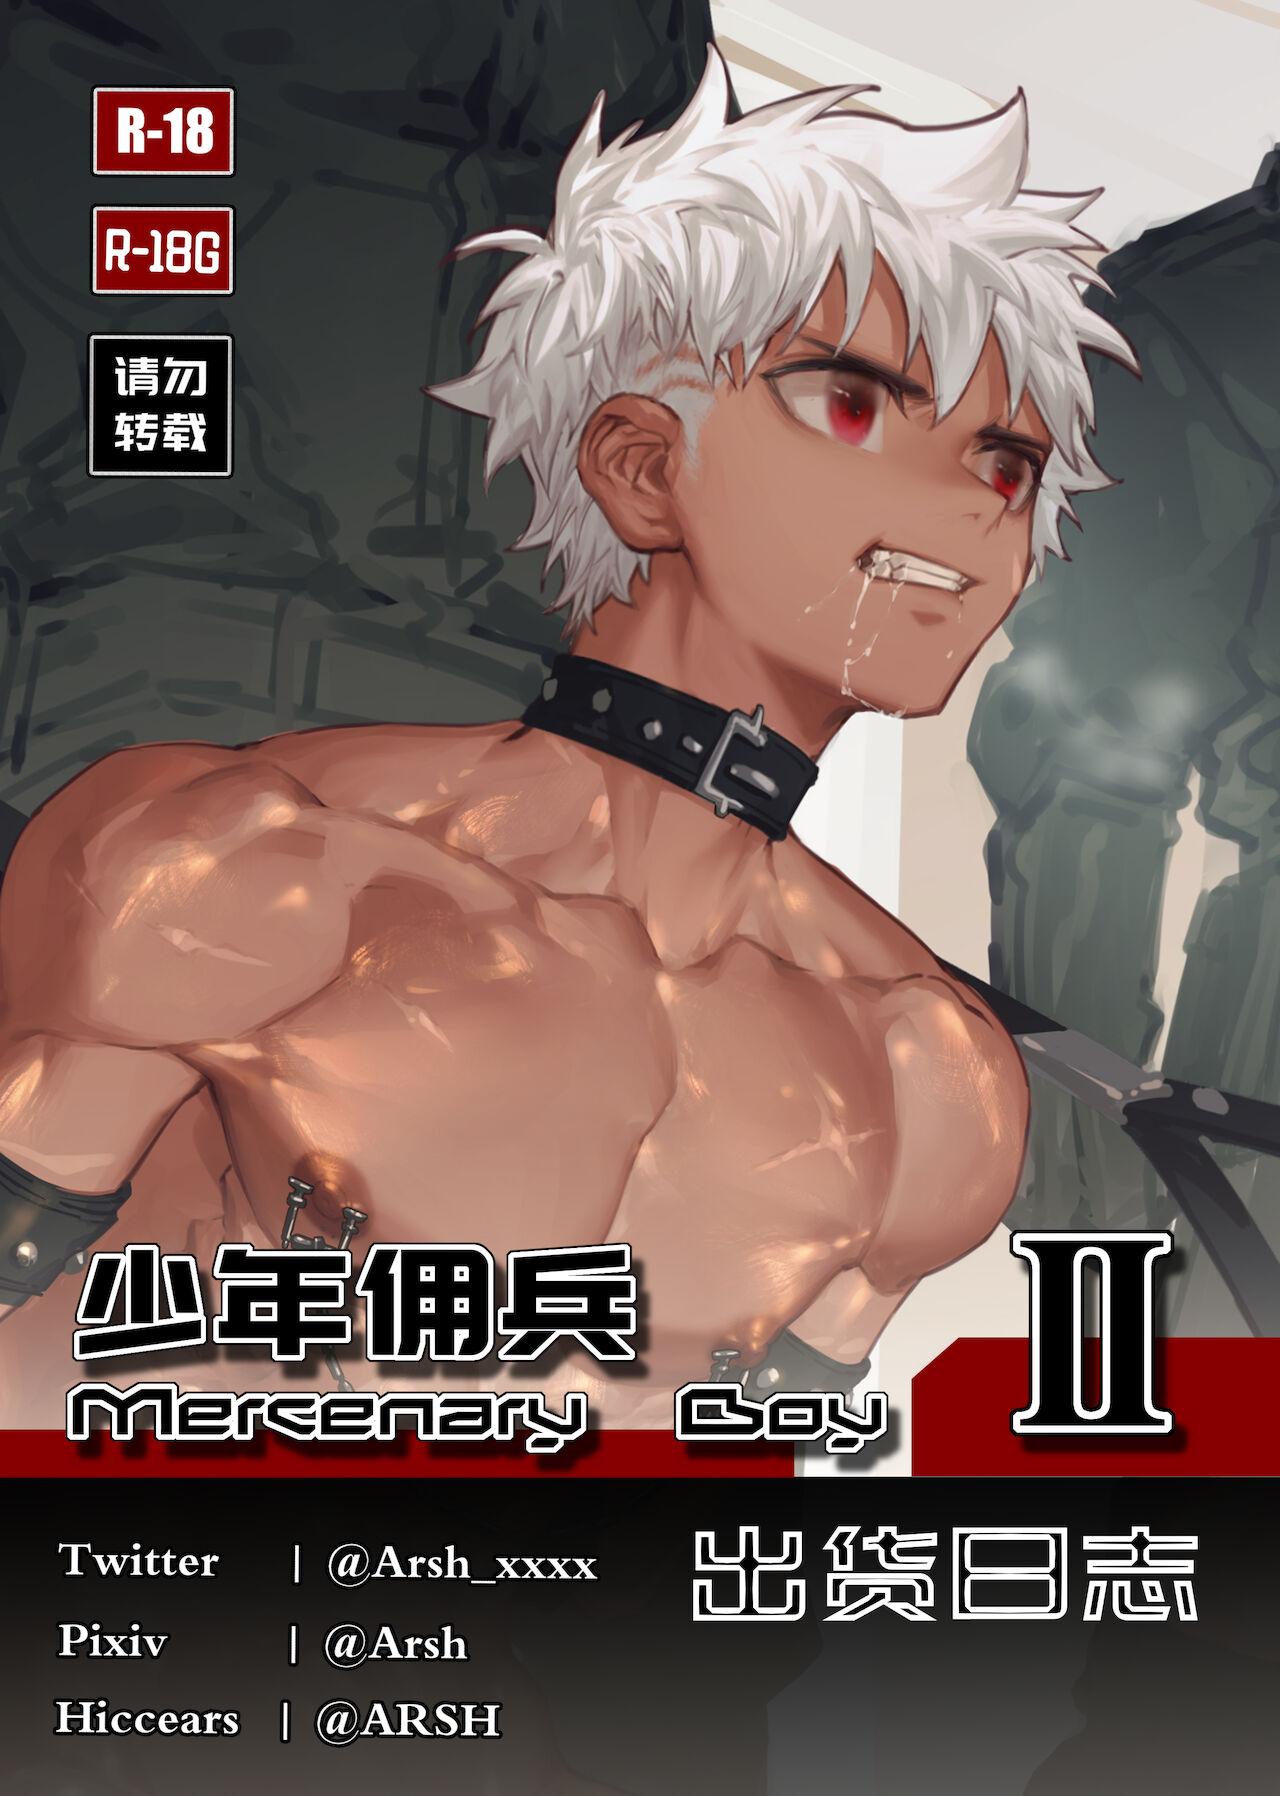 Mercenary Boy 0